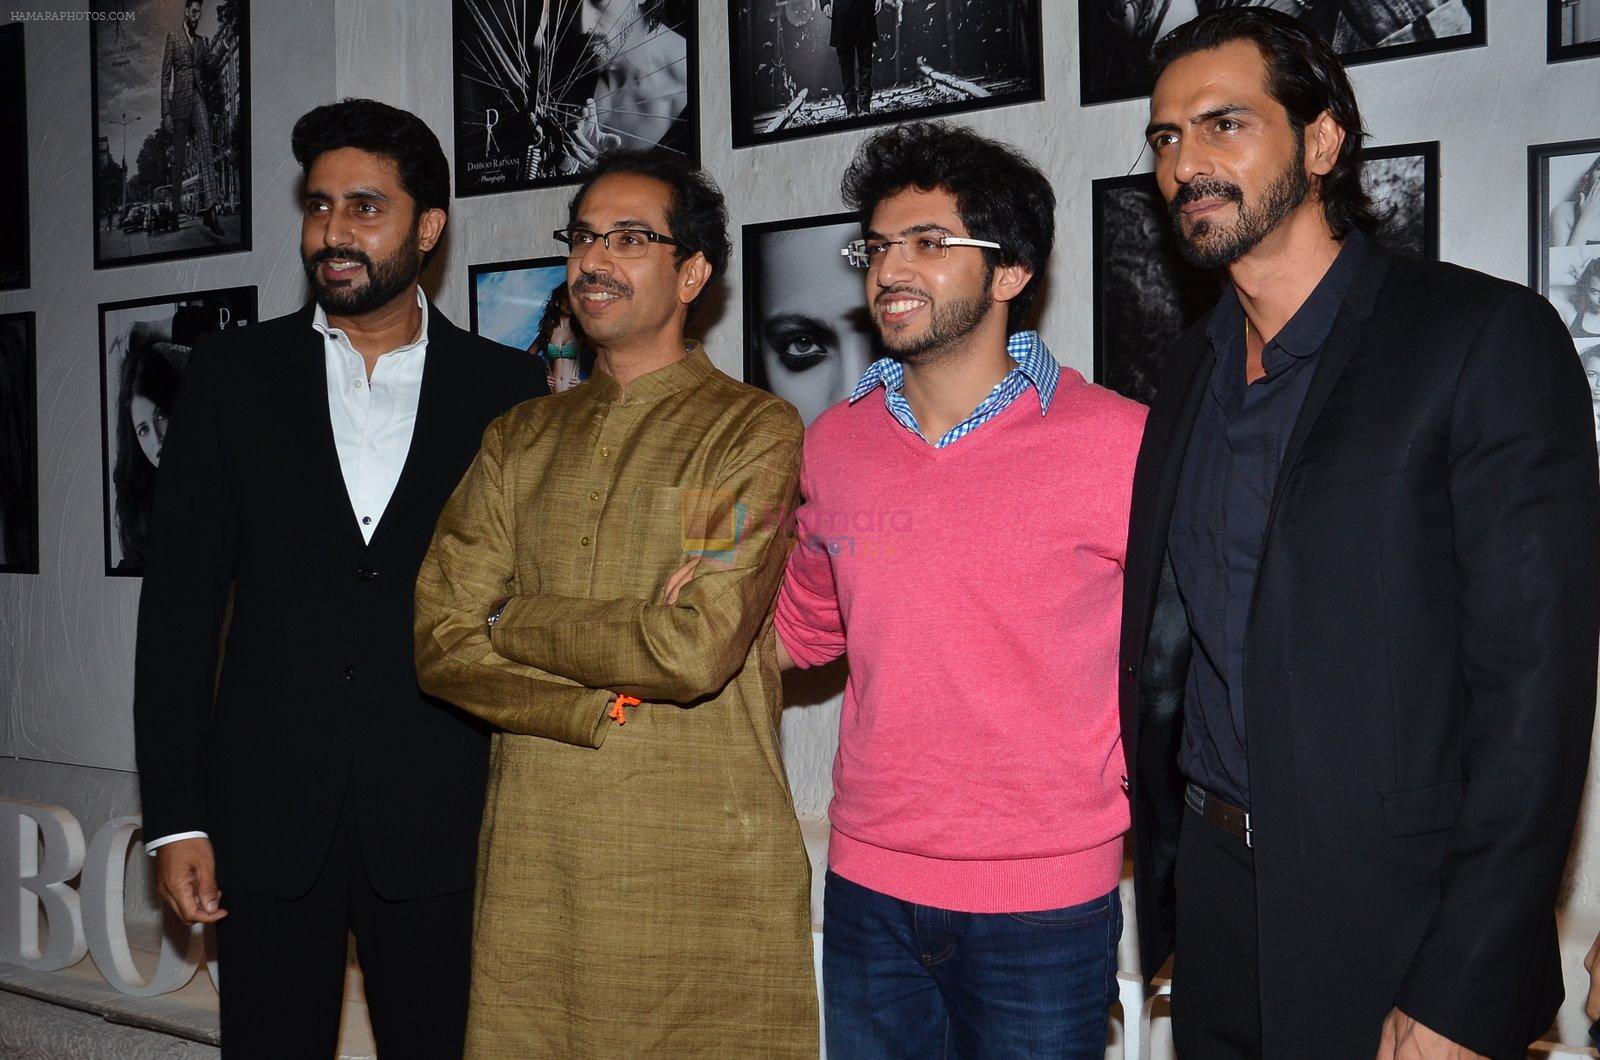 Abhishek Bachchan, Uddhav Thackeray , Aditya Thackeray, Arjun Rampal at Dabboo Ratnani calendar launch in Mumbai on 5th Jan 2015